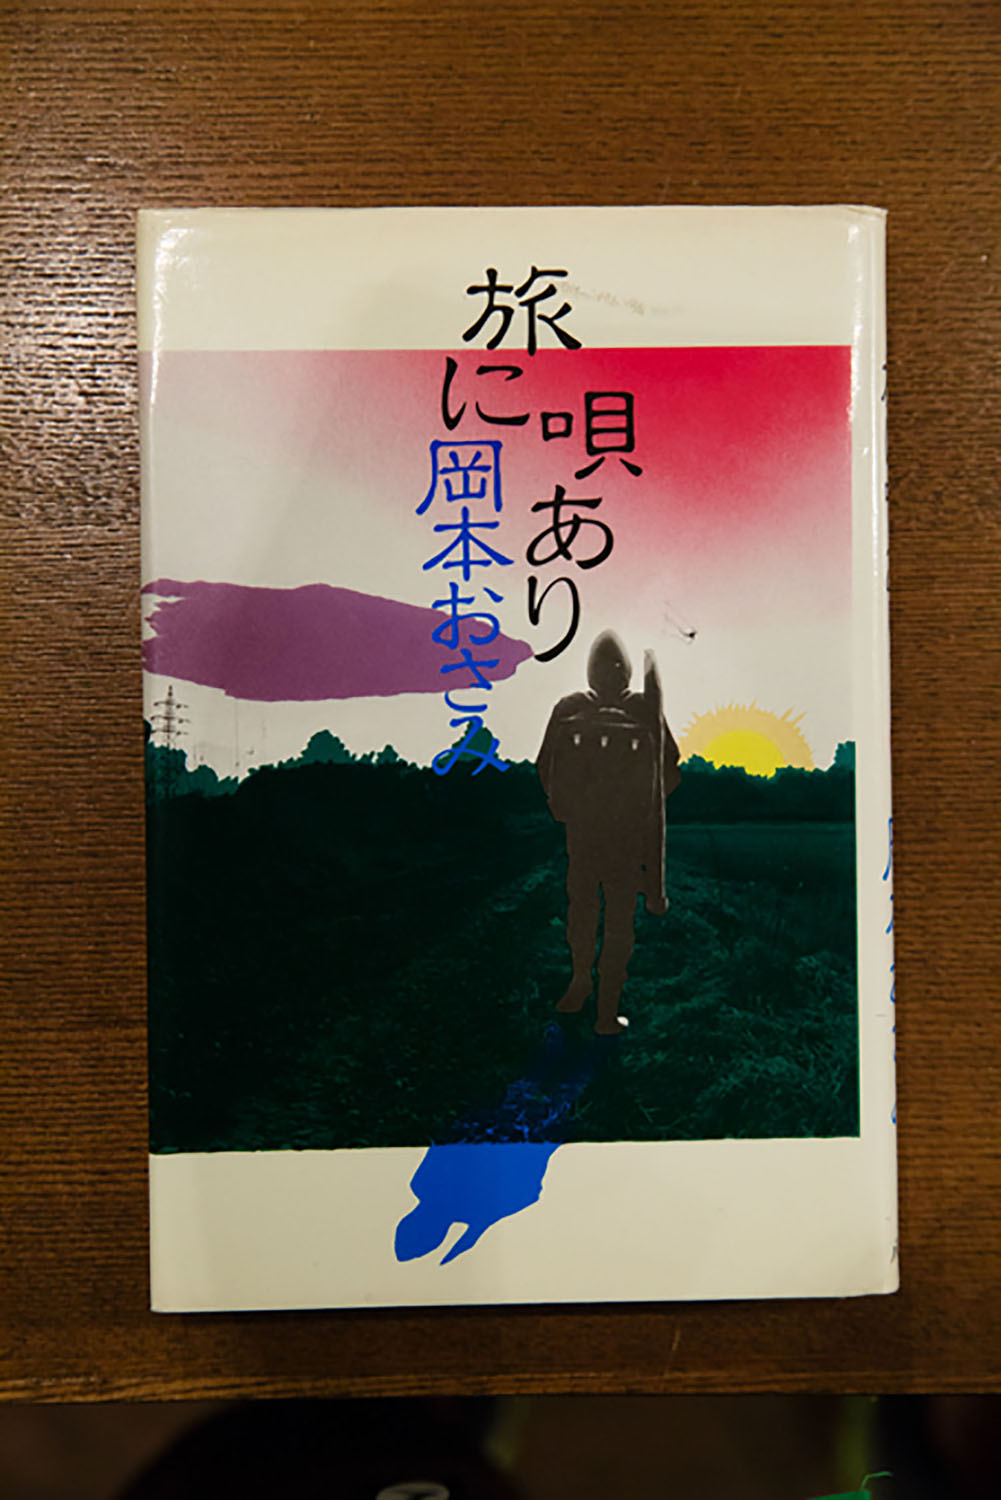 『旅に唄あり』岡本おさみ、2500円。「襟裳岬」の作詞家による、旅エッセイ。